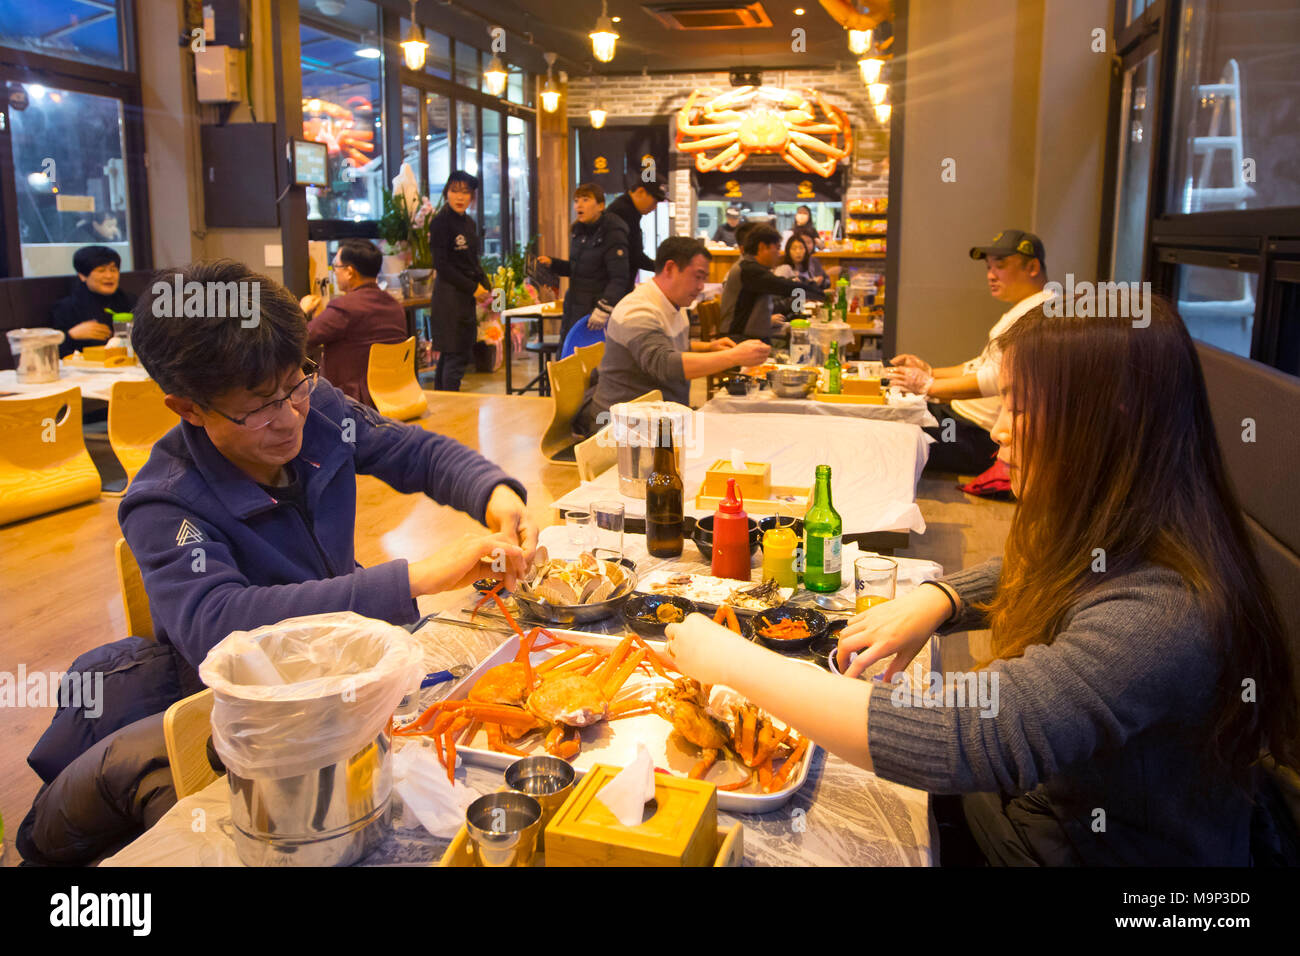 Les gens mangent coréen au crabe des neiges dans un restaurant à Cavaillon, une ville portuaire sur la côte de la mer de l'Est en Corée du Sud. Le crabe est un des fruits de mer de la spécialité de cette région. Sokcho est proche de Parc National de Seoraksan et une destination touristique populaire. Il a été particulièrement attrayant pour les coréens depuis son apparition dans le célèbre K-Drama Winter Sonata. Pyeongchang à proximité sera l'hôte des Jeux Olympiques d'hiver en février 2018. Banque D'Images